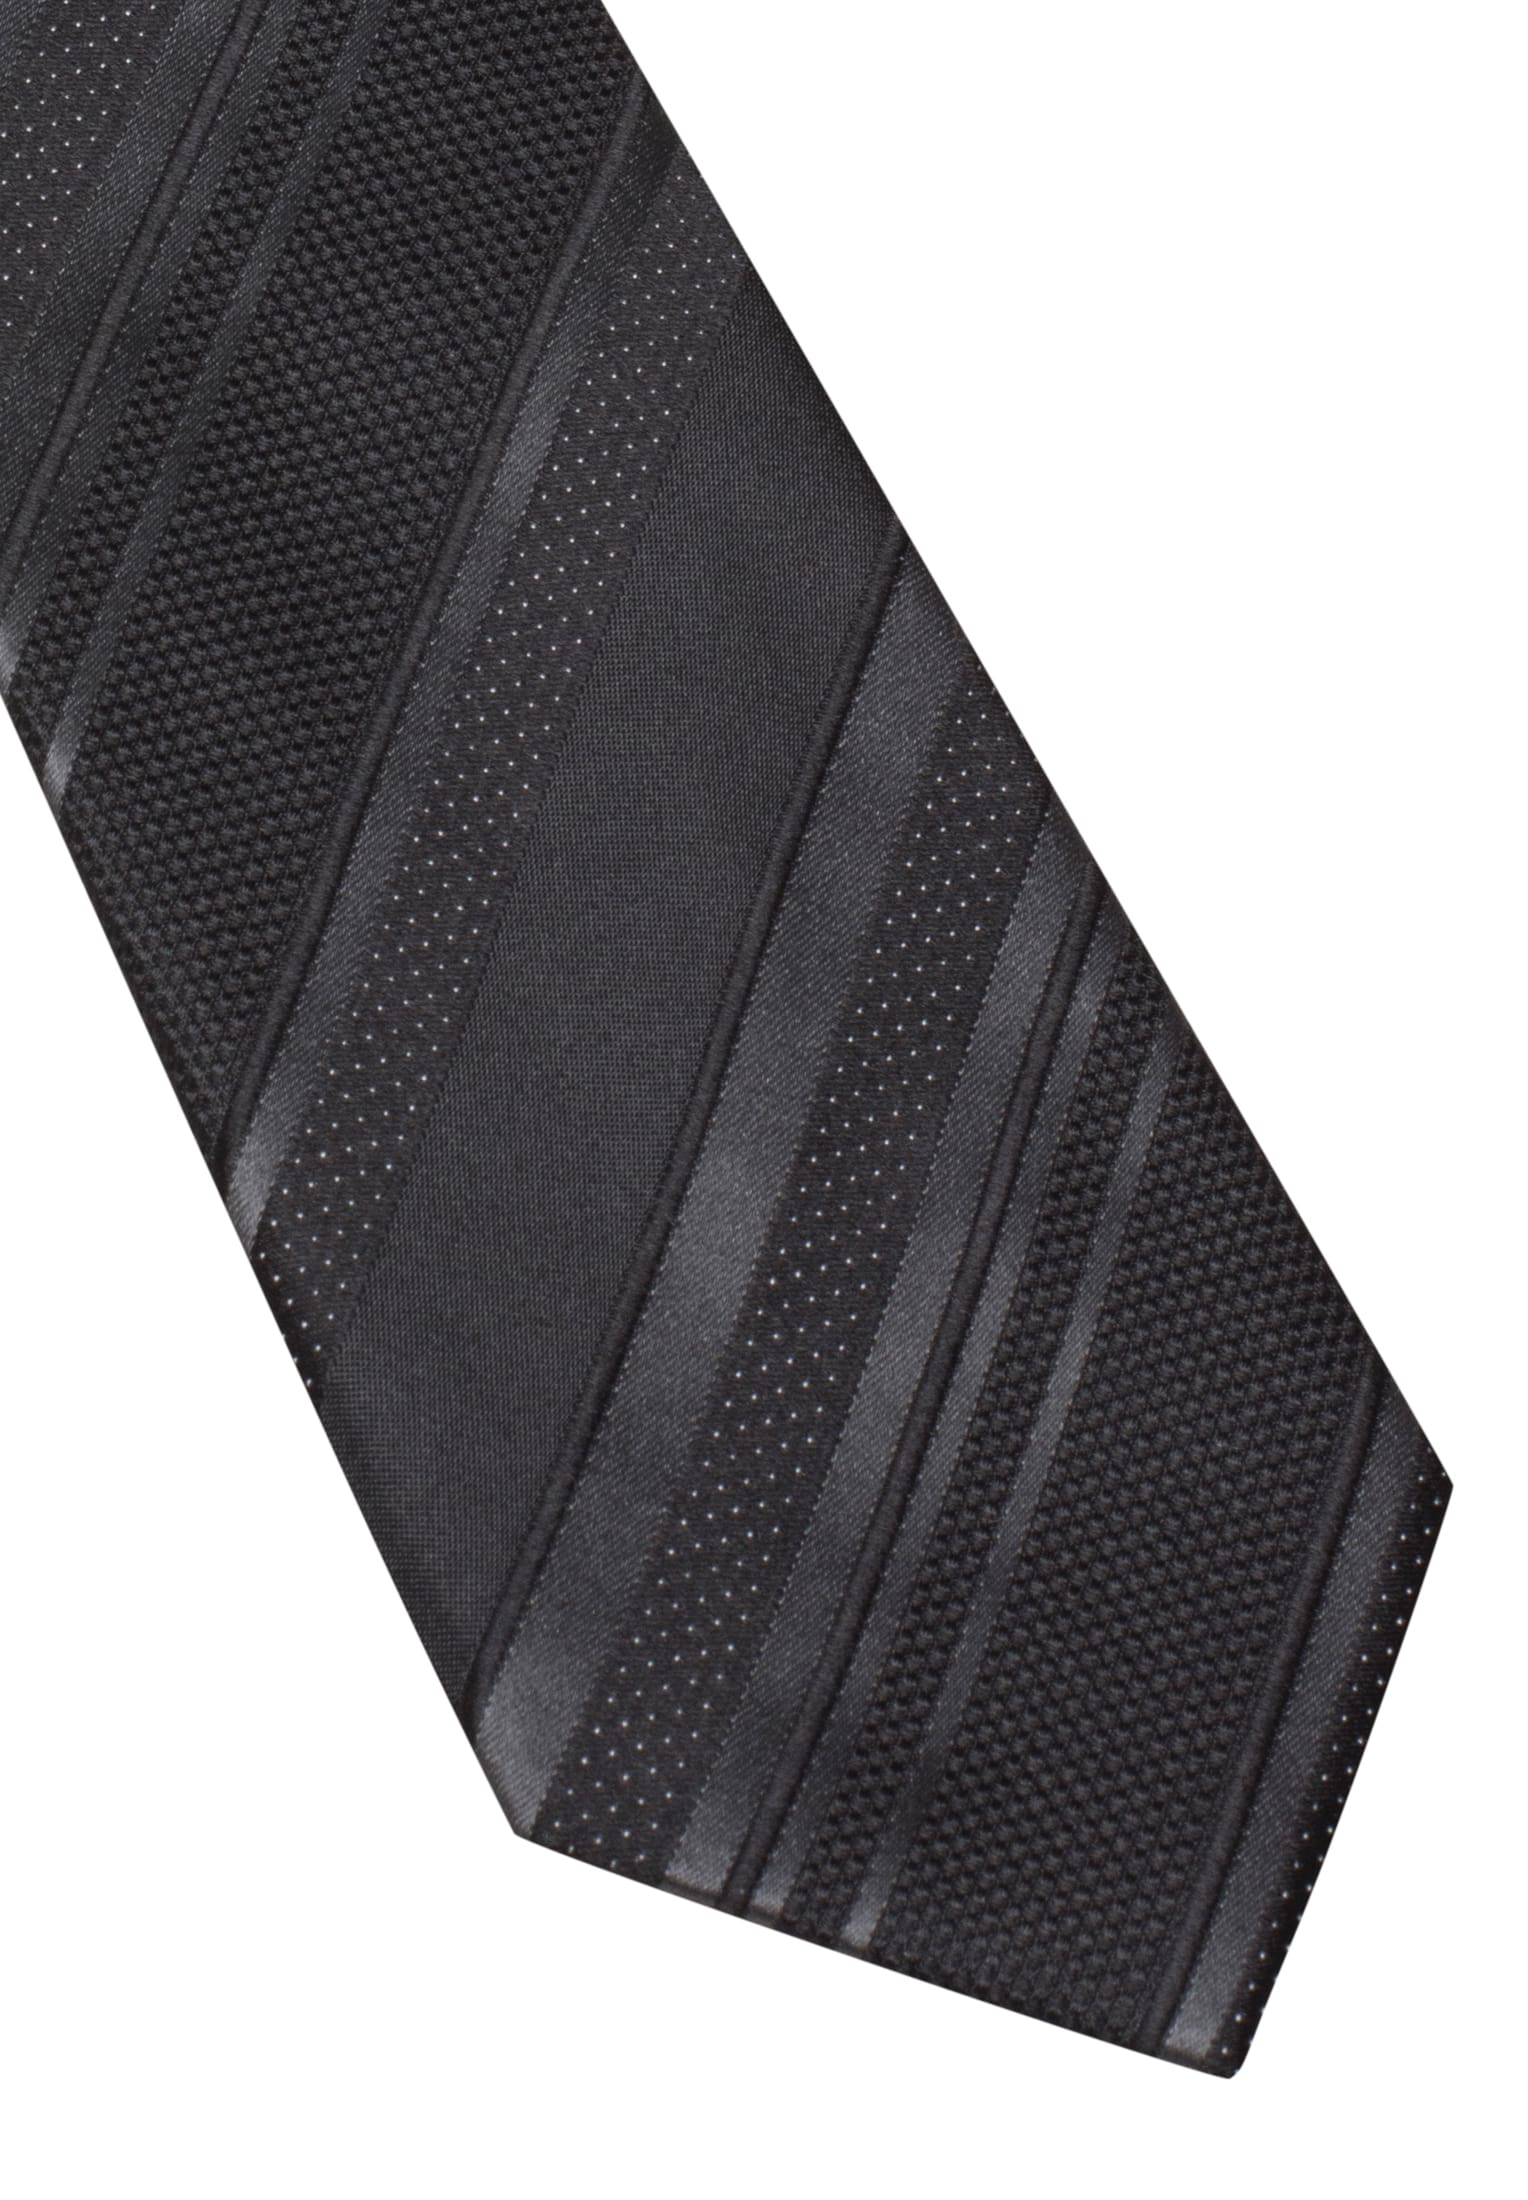 Krawatte in schwarz gestreift